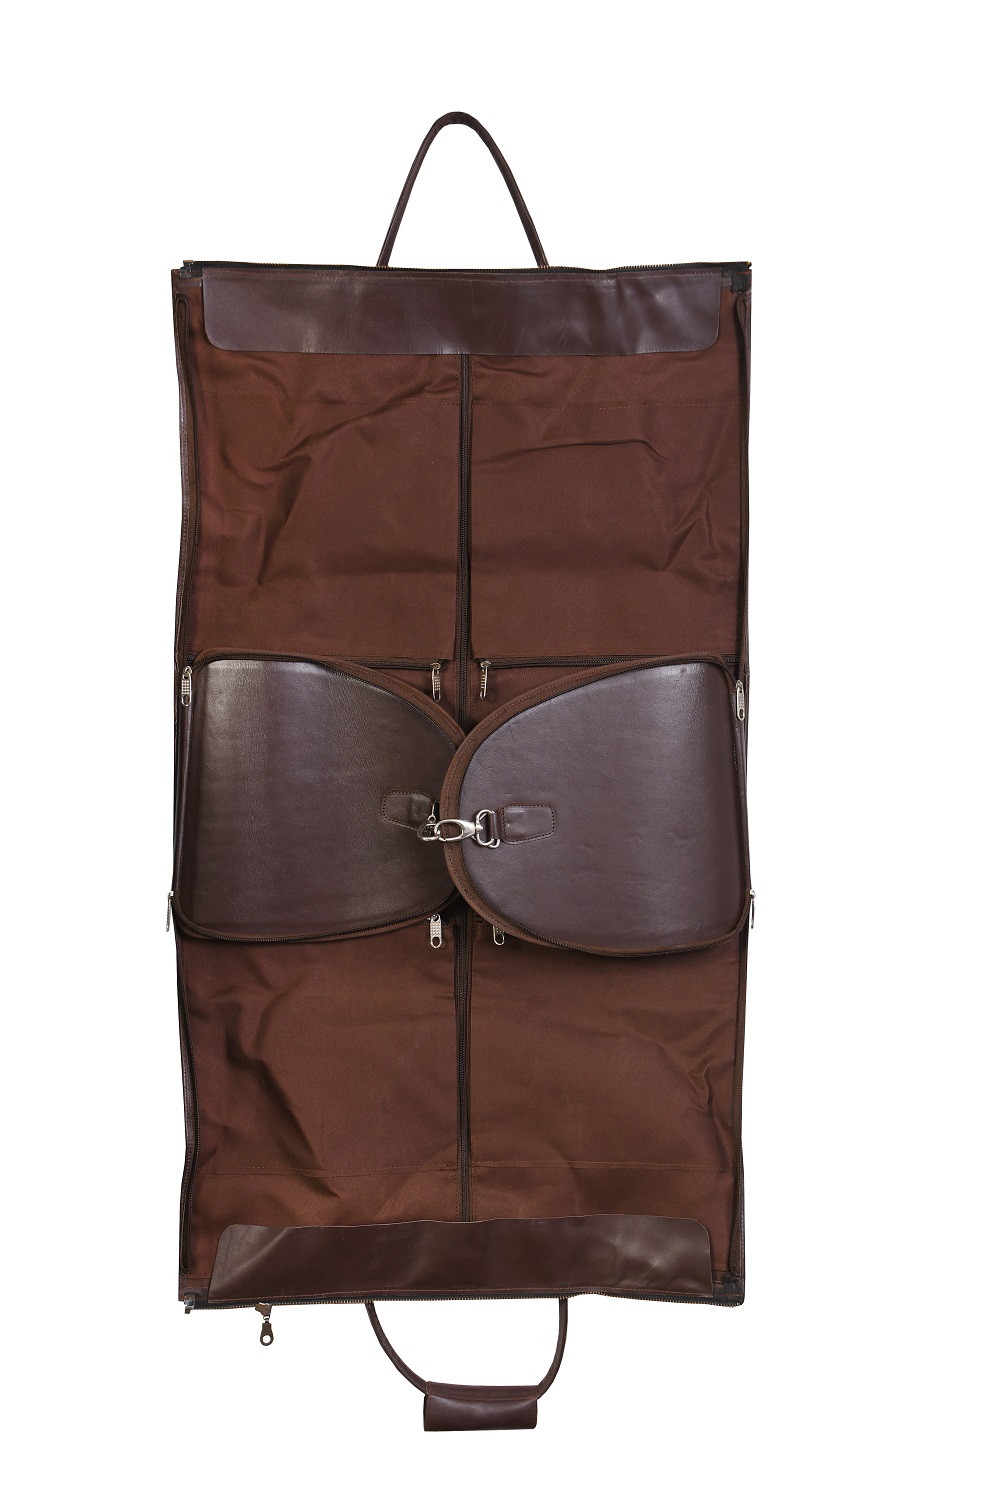 Handmade Leather Toiletry Carry Handle Bag, Make Up Kit Bag, Brown Travel Bag